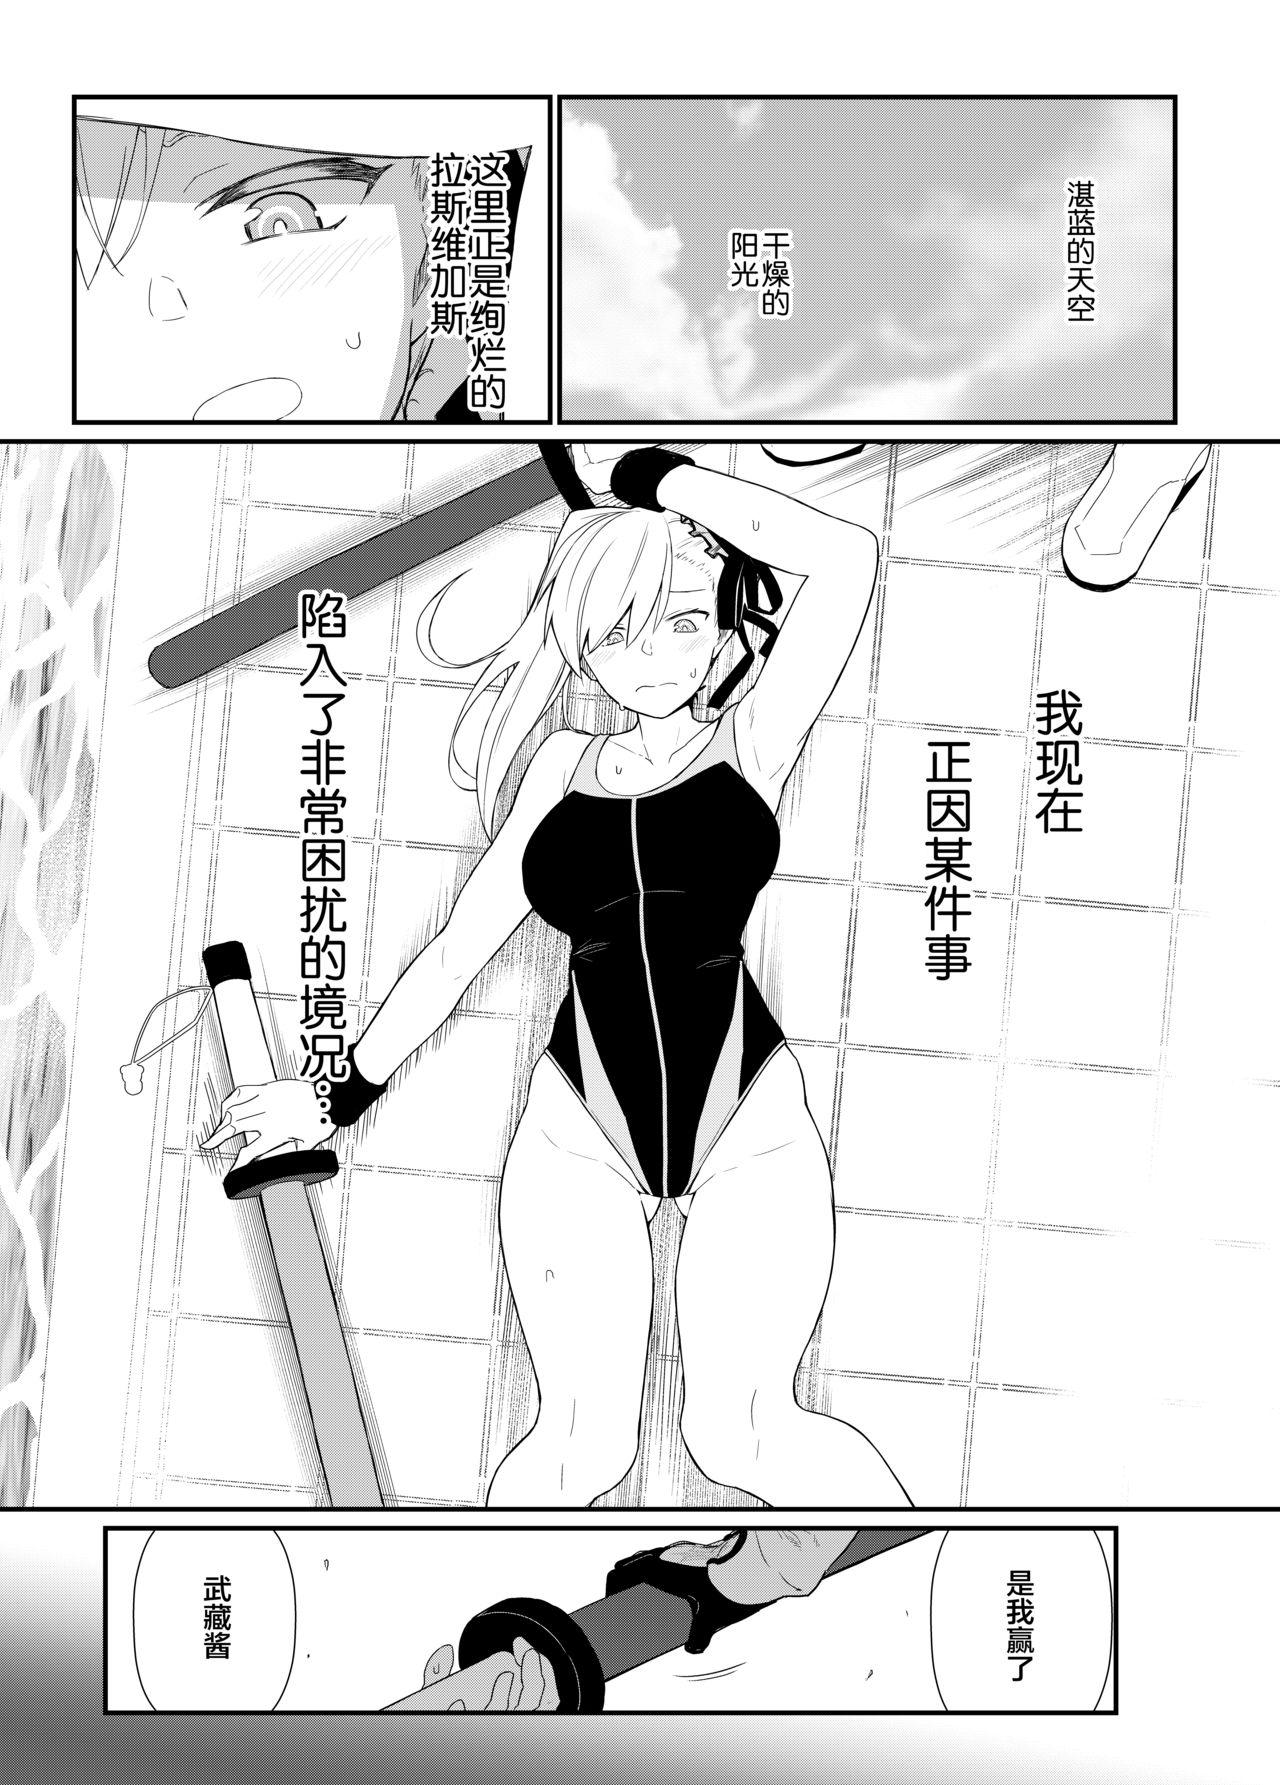 Buttfucking GIRLFriend's 18 - Fate grand order Cojiendo - Page 3